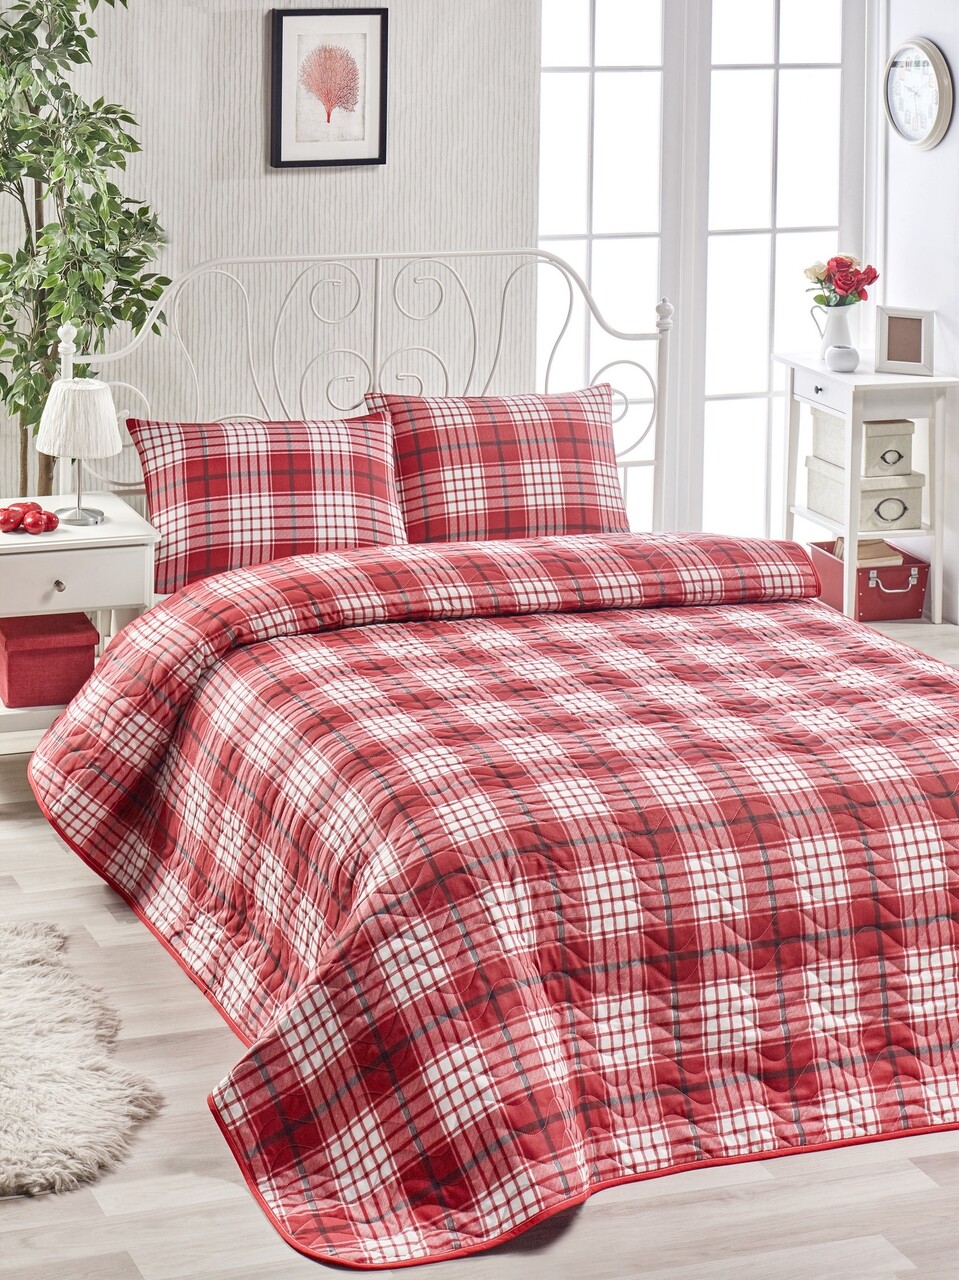 Egyszemélyes ágytakaró szett Burberry - Red, EnLora Home, 2 darab, 65% pamut és 35% poliészter, piros